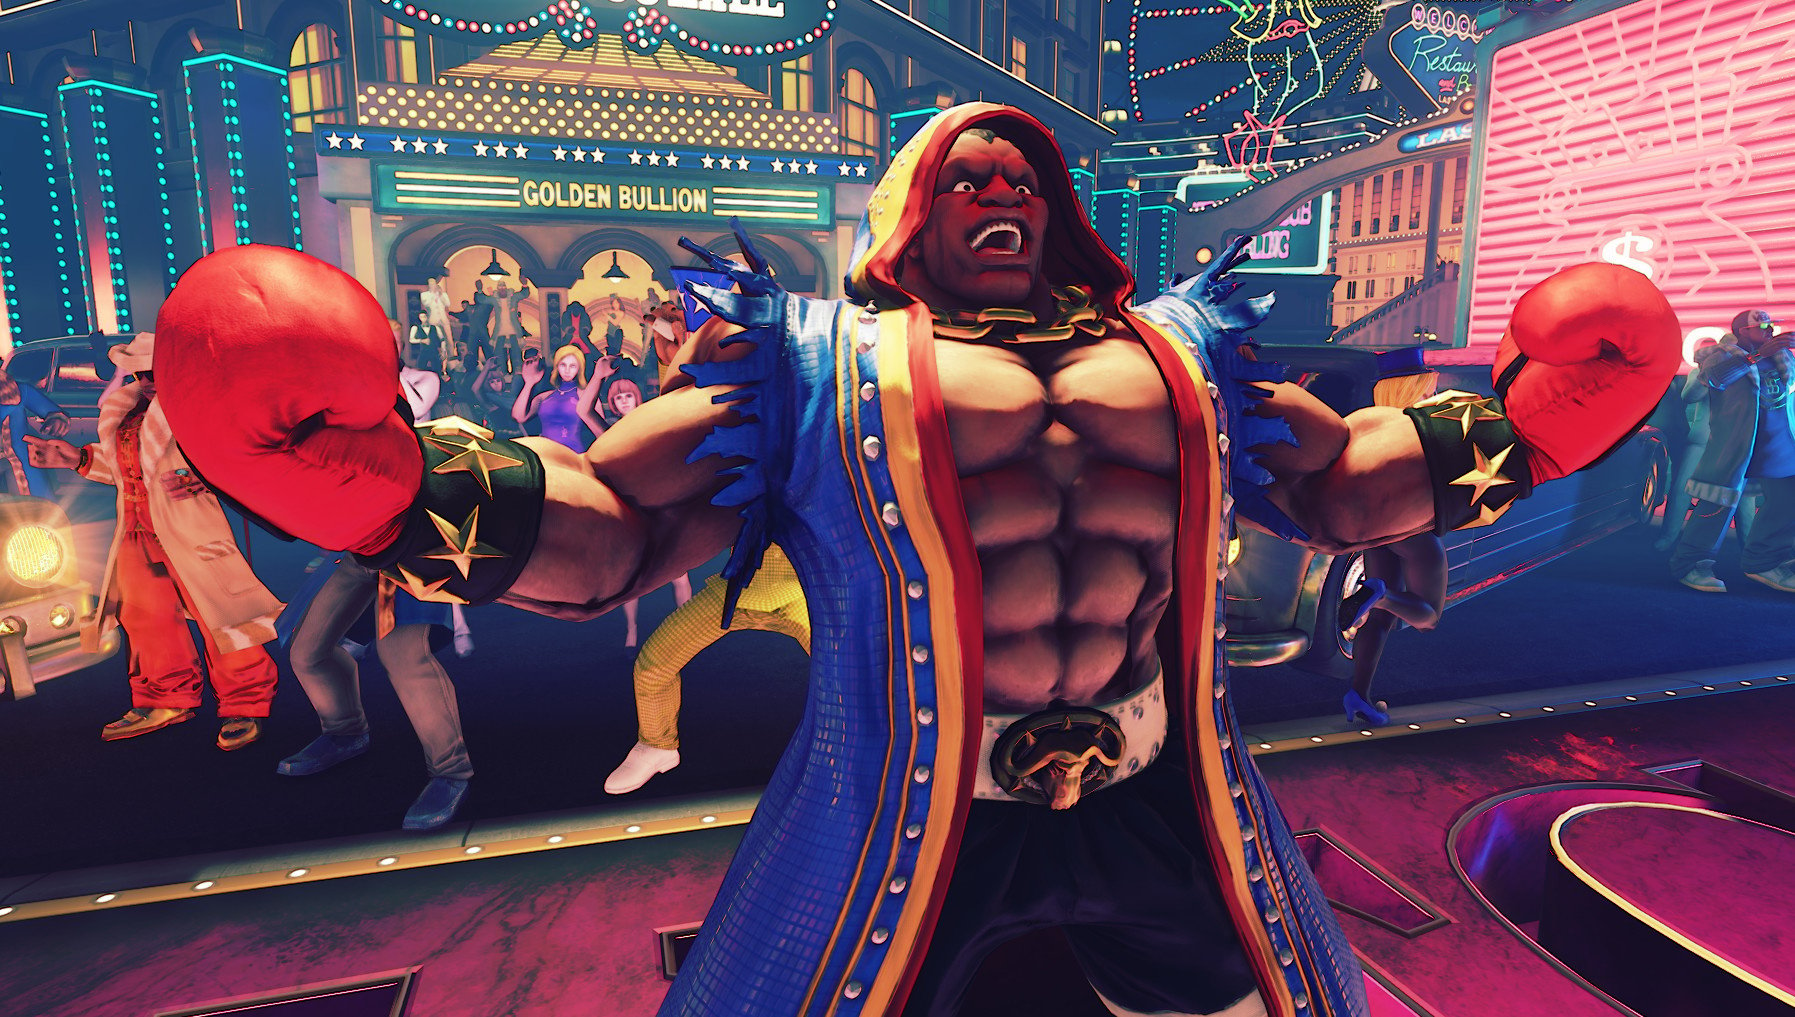 Street Fighter V Arcade Edition (Sony PlayStation 4, 2018) PS4 13388560417